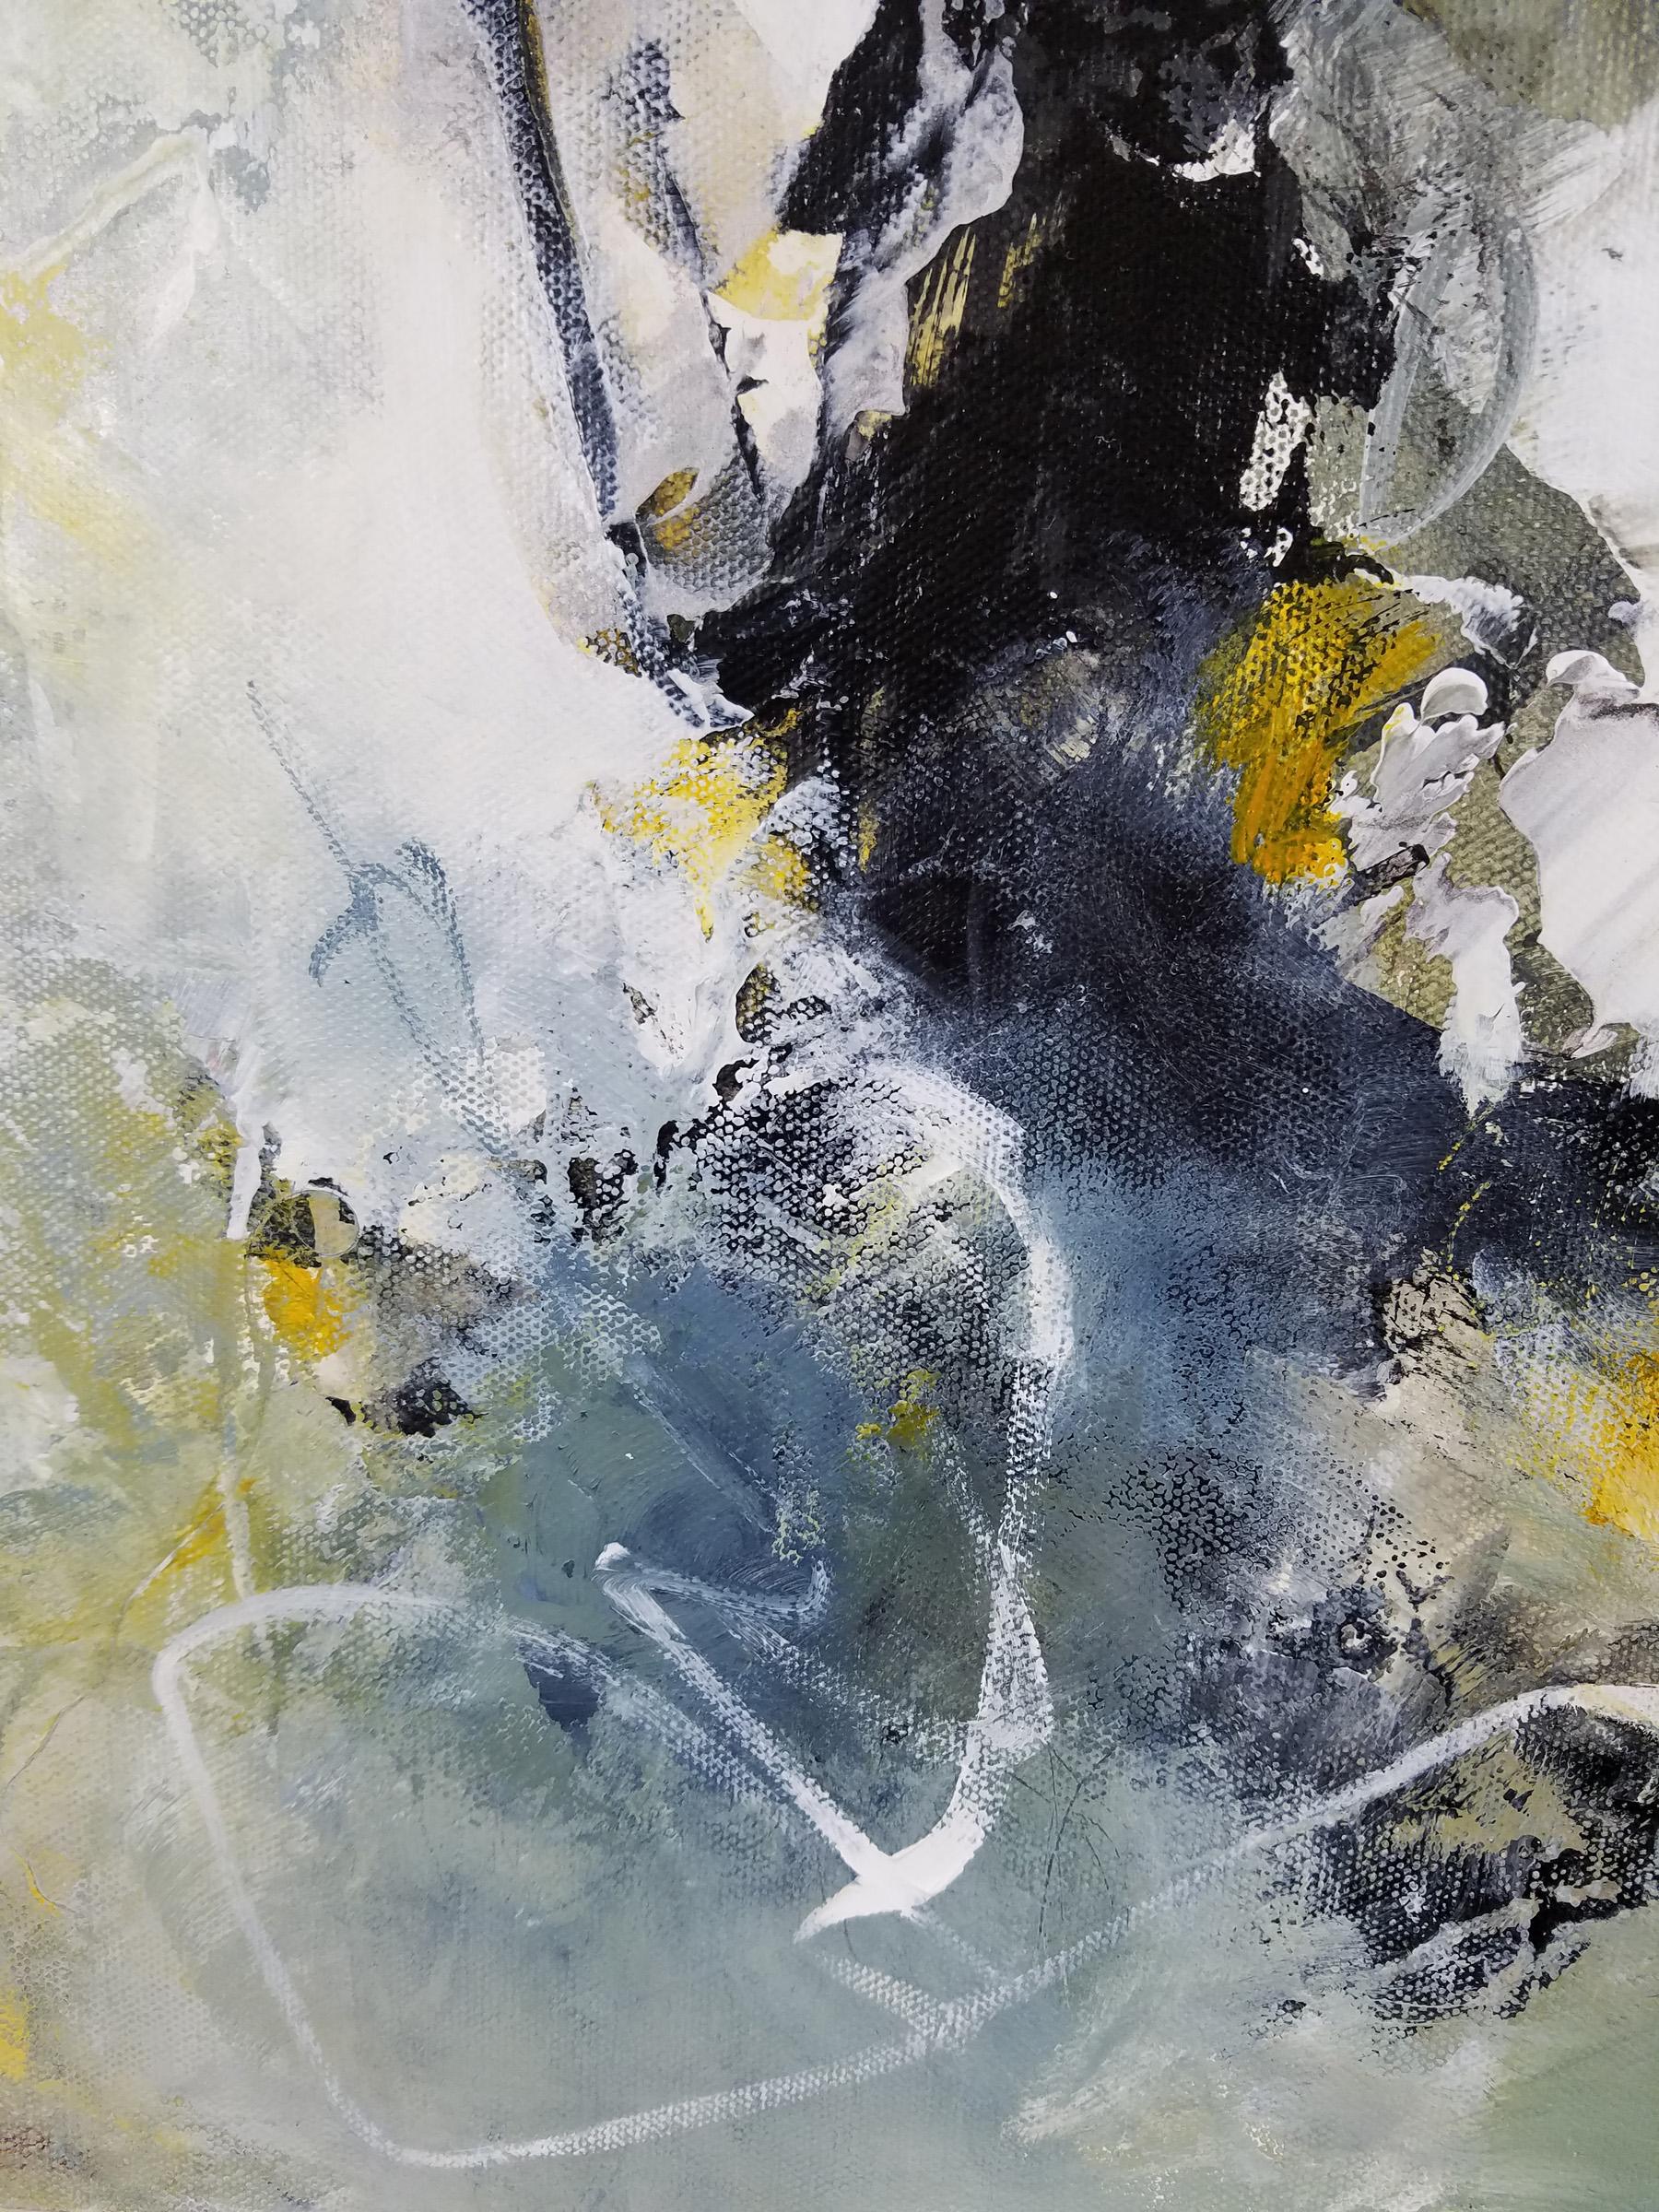 Corps et âme -  Peinture contemporaine (noir + blanc + jaune) - Contemporain Painting par Laurie Barmore